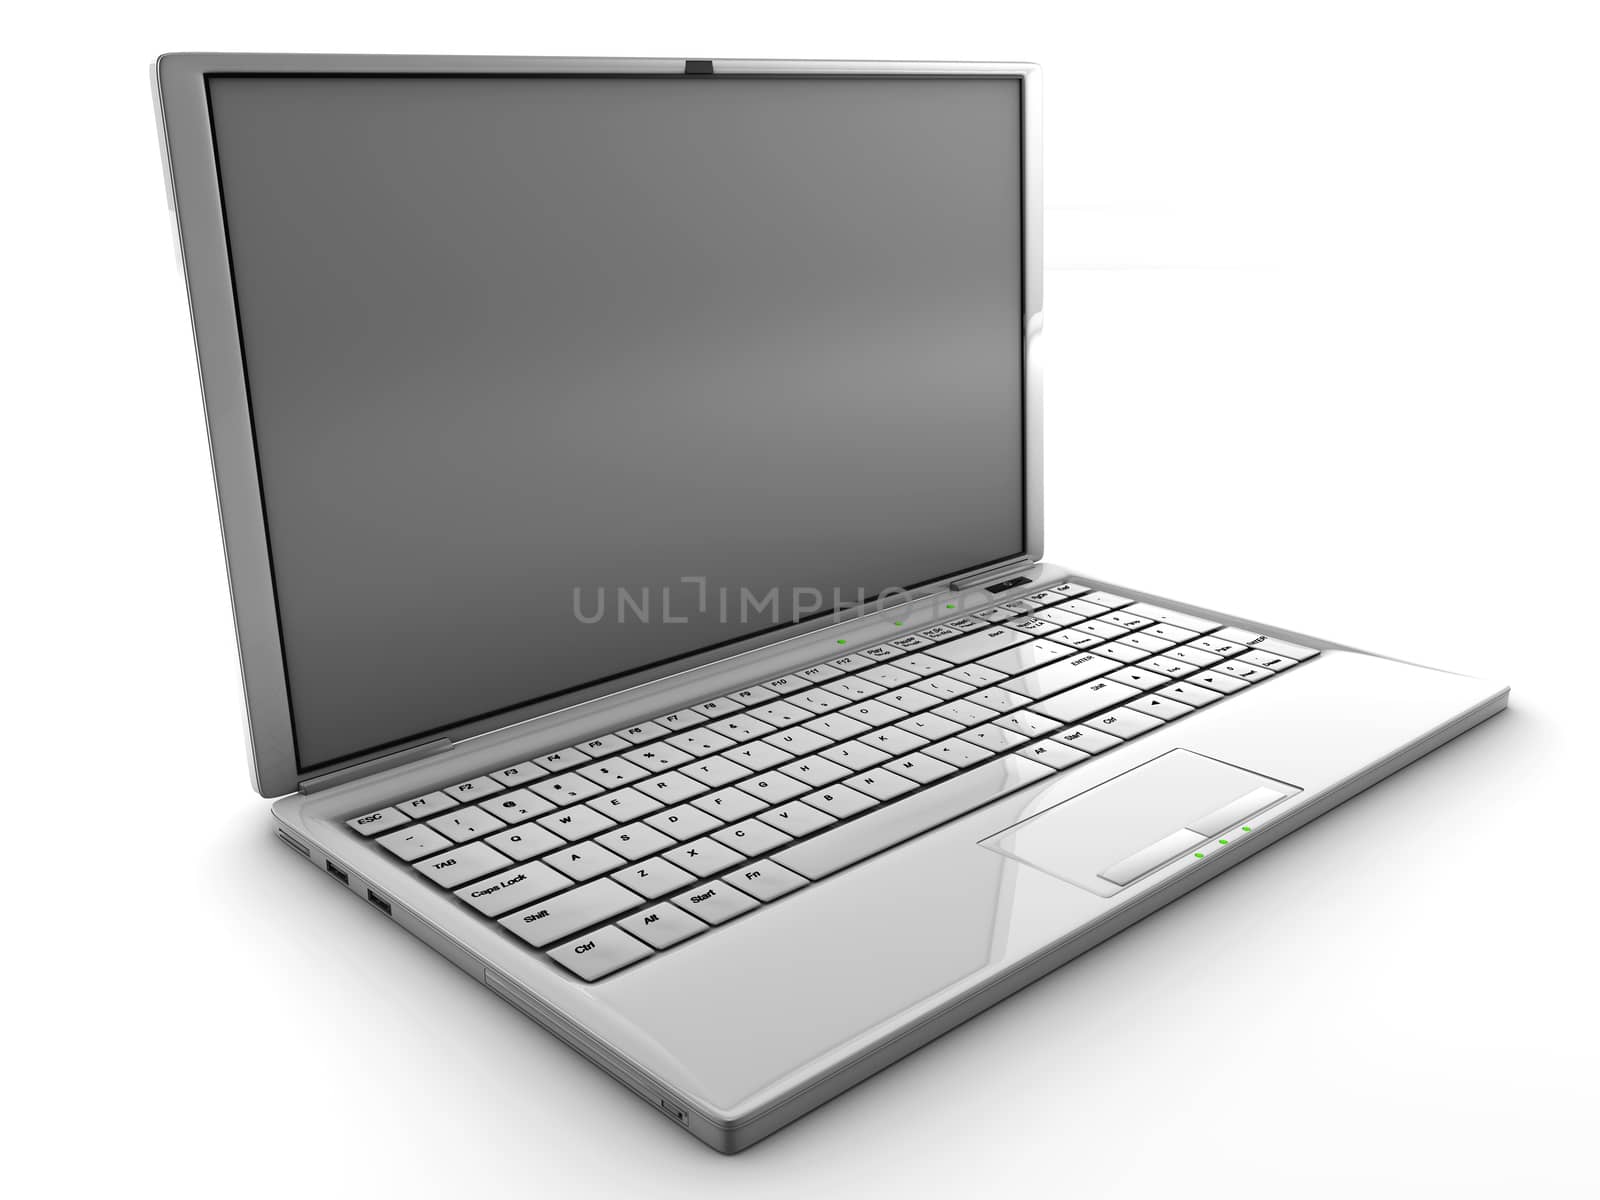 Laptop by F1b0nacci